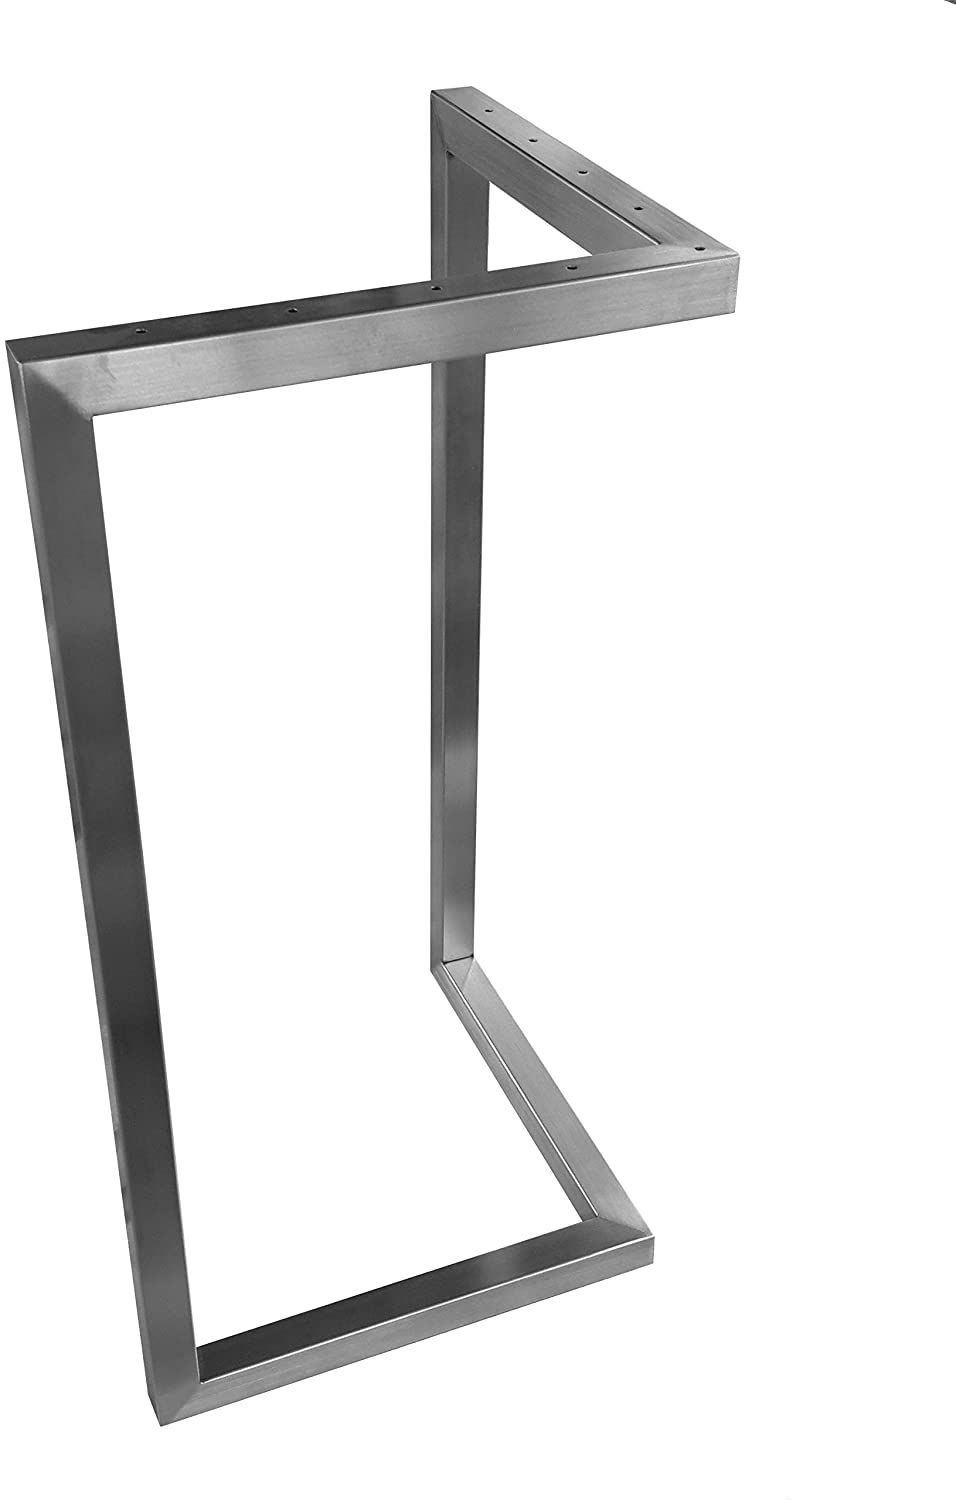 CHYRKA® V-Tischkufe Edelstahl 201 30x30 Tischgestell Rahmentisch Kufengestell Tischuntergestell MTV